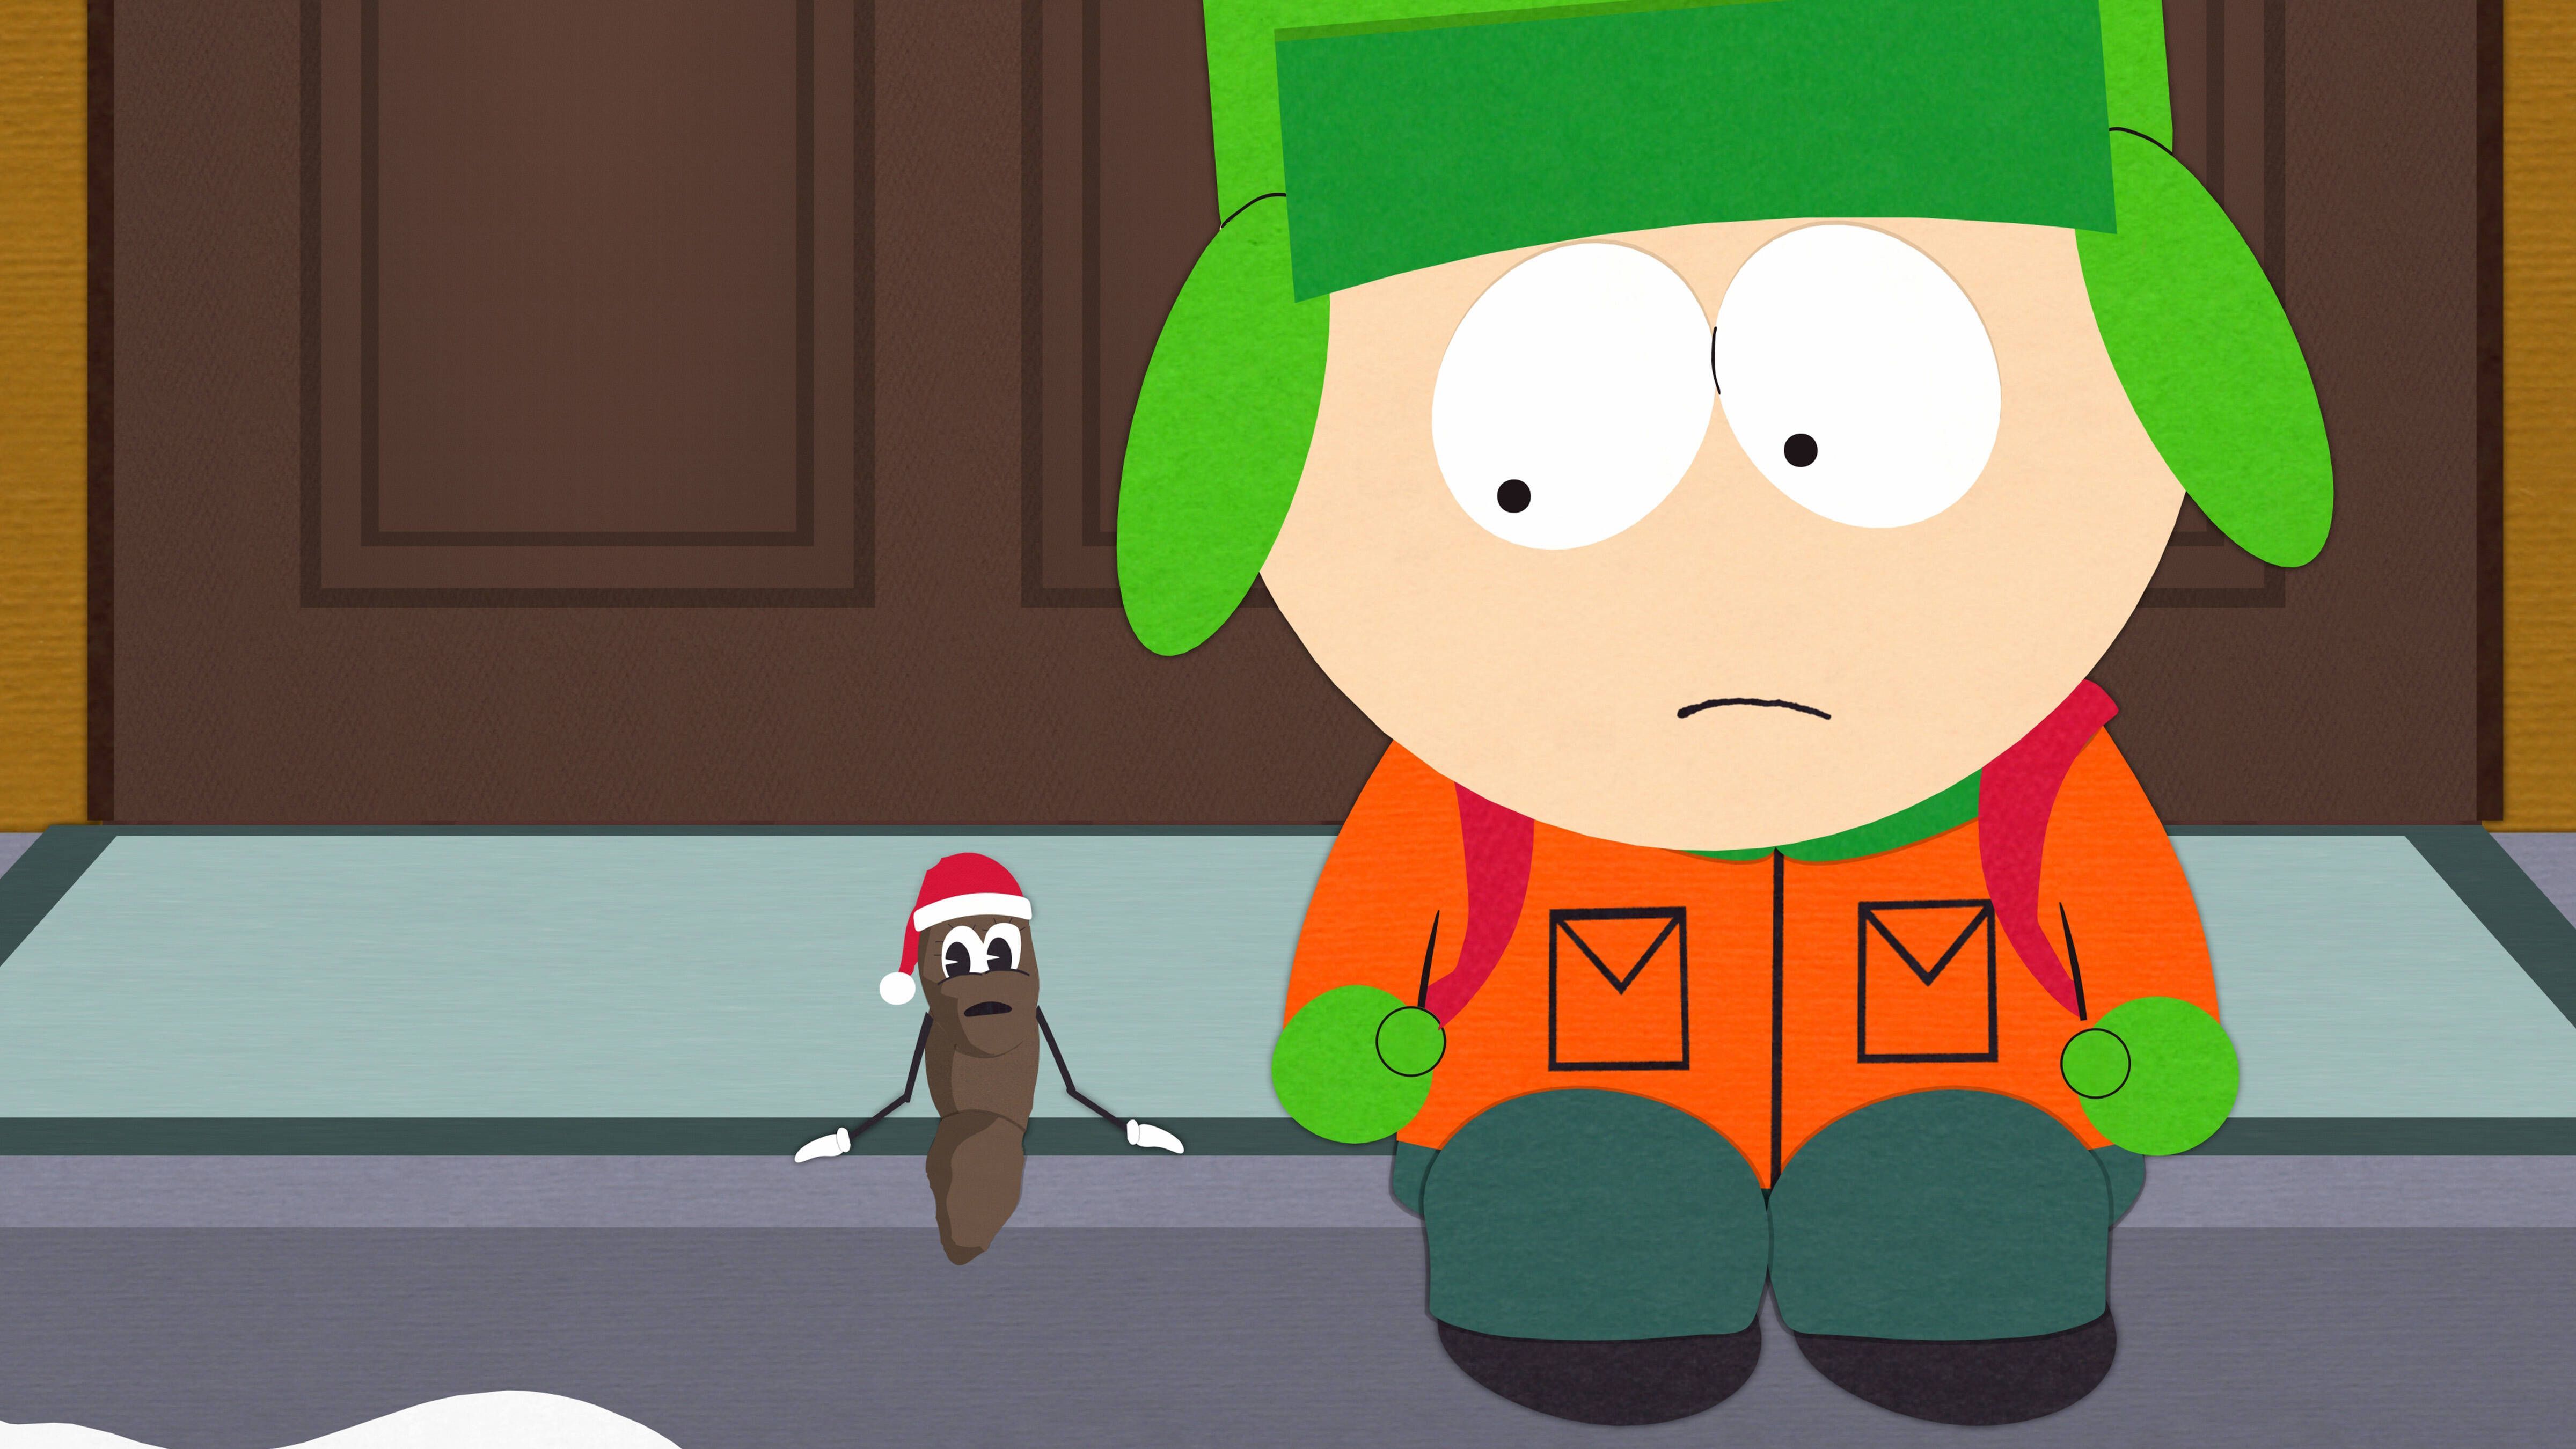 <strong>Denver Nuggets – Kyle Broflovski („South Park“)</strong><br>Hach ja, die Liebe! In der siebten Folge der 16. Staffel geht Kyle (hier im Bild mit Mr. Hankey, dem Weihnachtskot) mit einem Mädchen zum Spiel der Denver Nuggets. Klingt eigentlich schön. Doch dann kommt Cartman ...